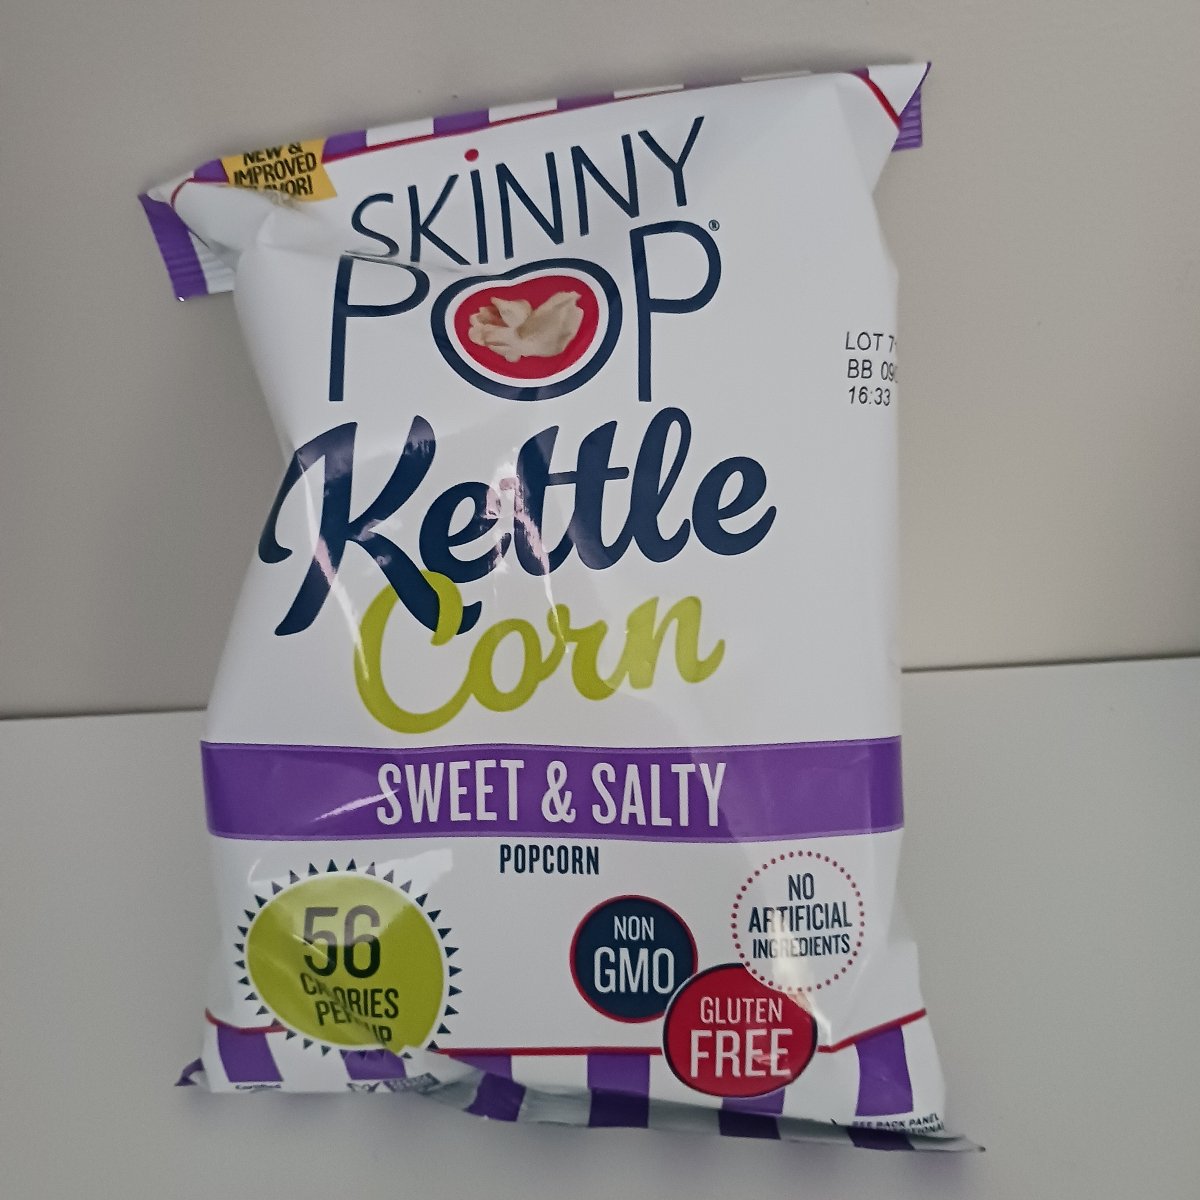 Skinny Pop Kettle Corn, Sweet & Salty 5.3 Oz, Popcorn